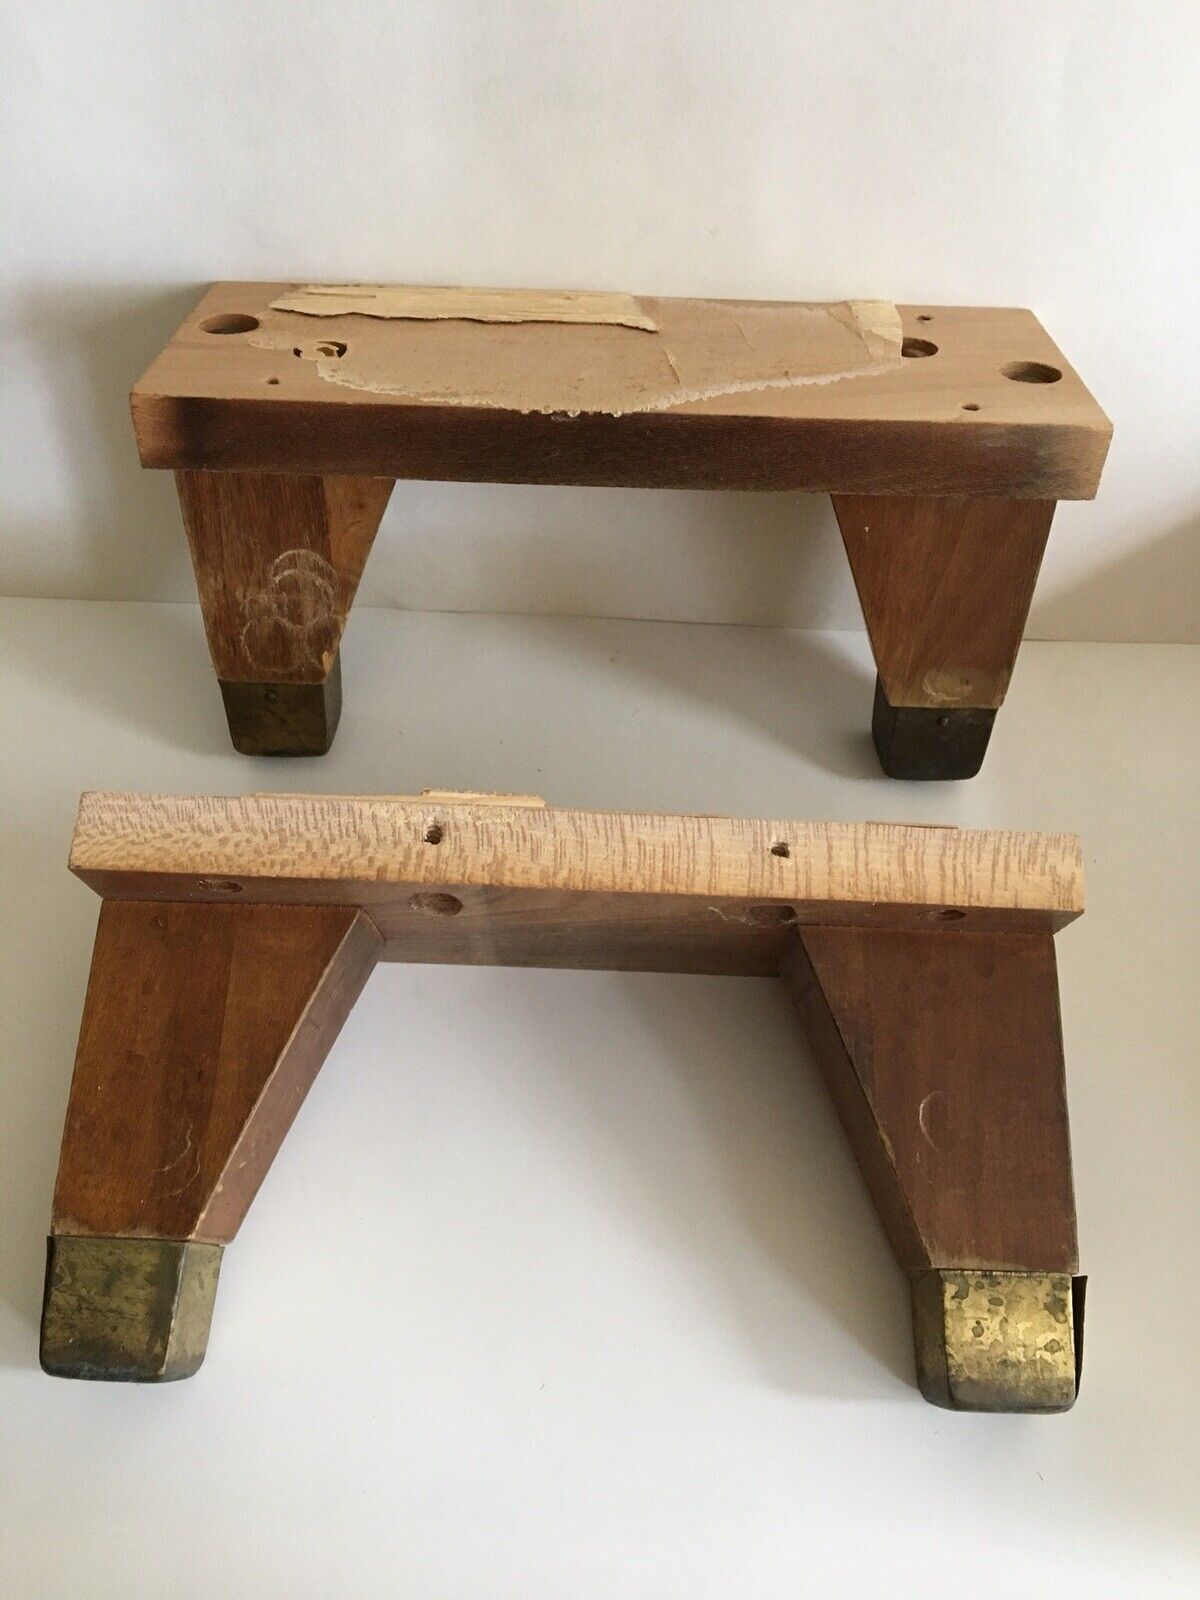 4 Vintage Mid Century Modern Salvaged Tapered Wood furniture legs.